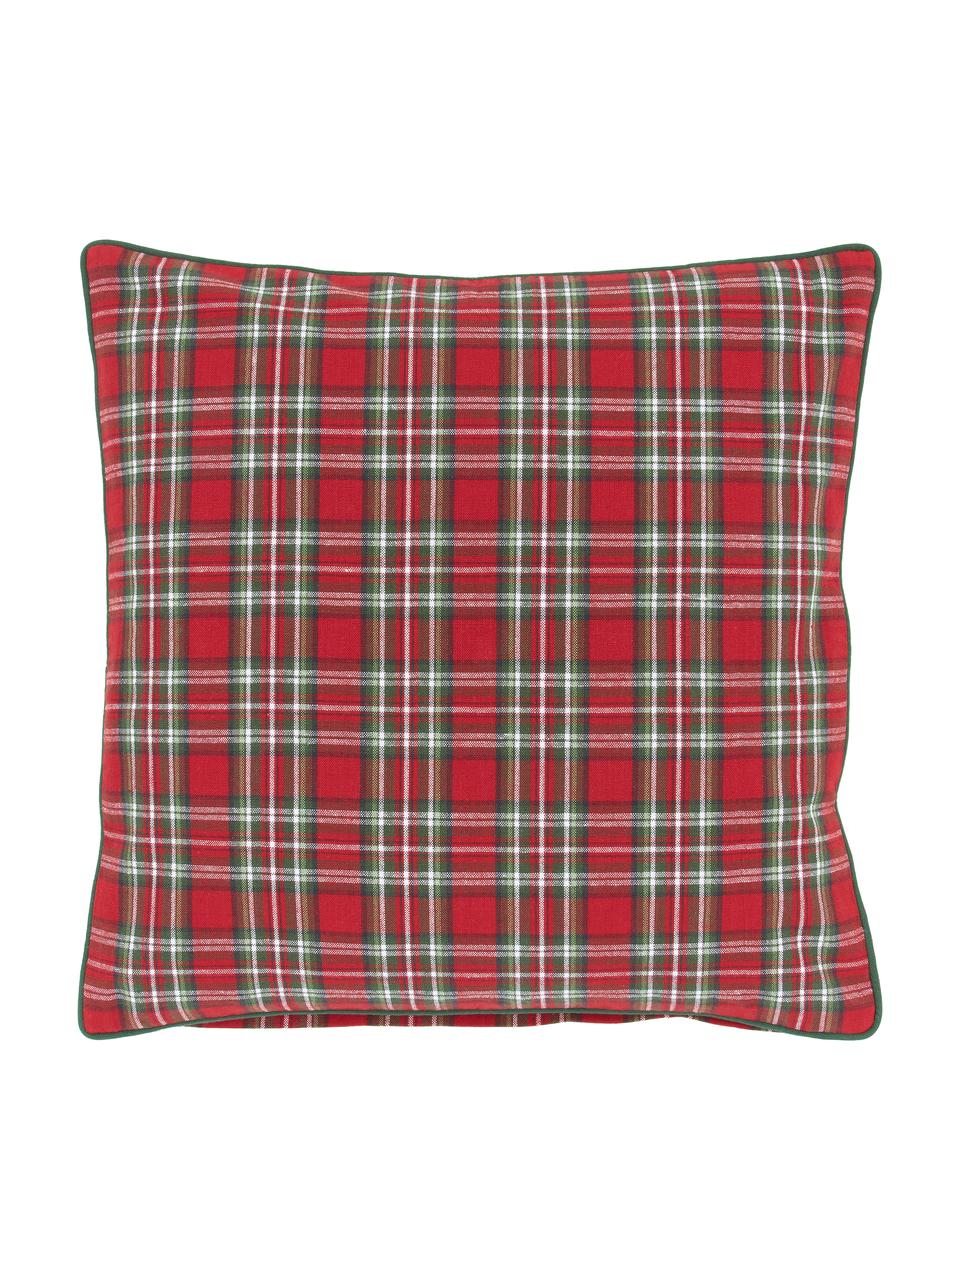 Karierte Kissenhülle Tartan in Rot und Grün, 100% Baumwolle, Rot, Dunkelgrün, 45 x 45 cm